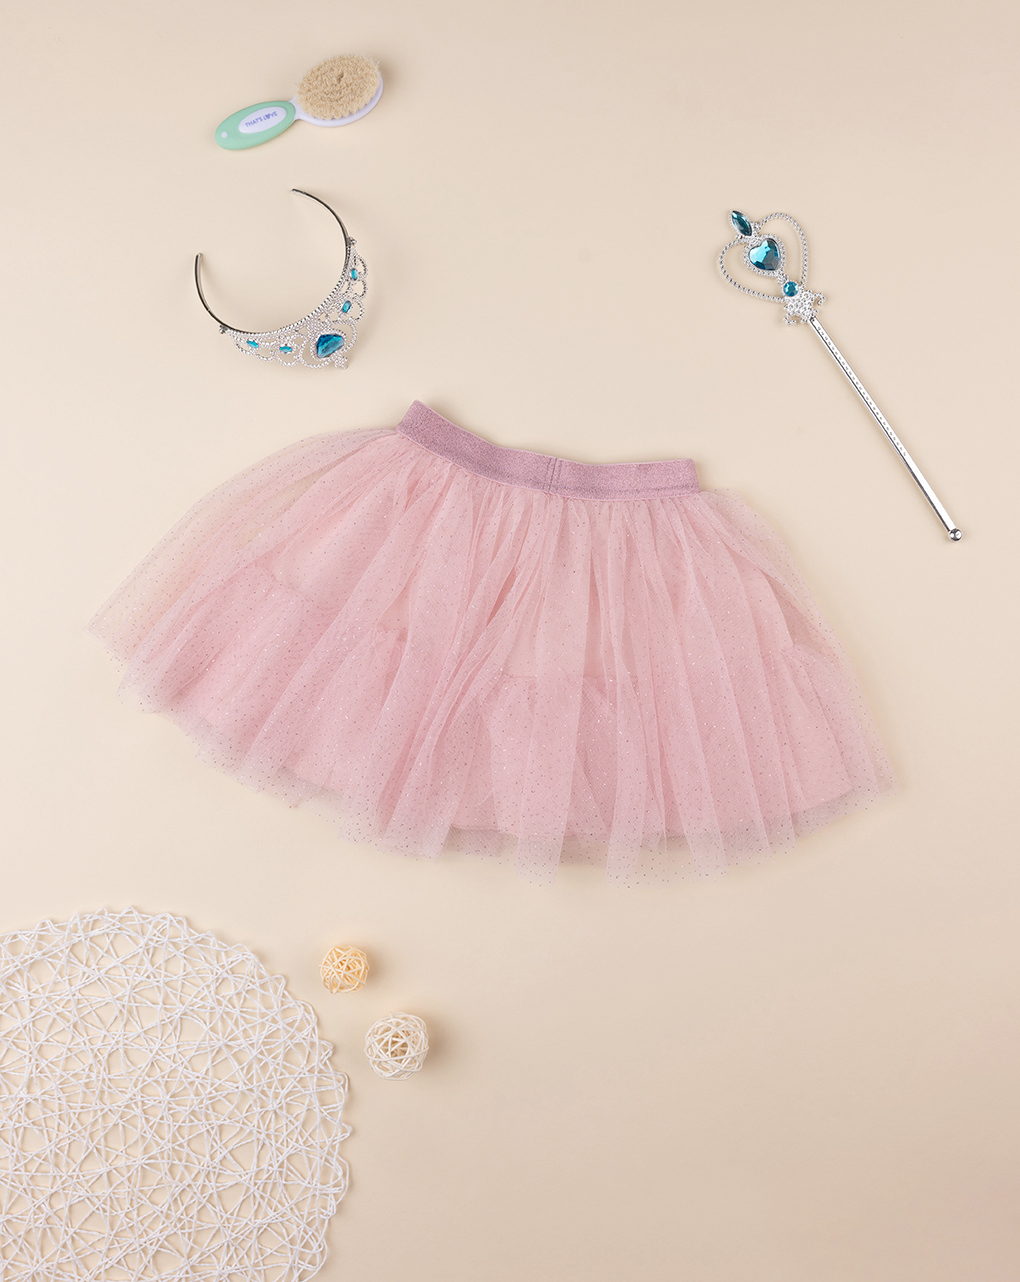 παιδική φούστα τούλινη ροζ για κορίτσι - Prénatal